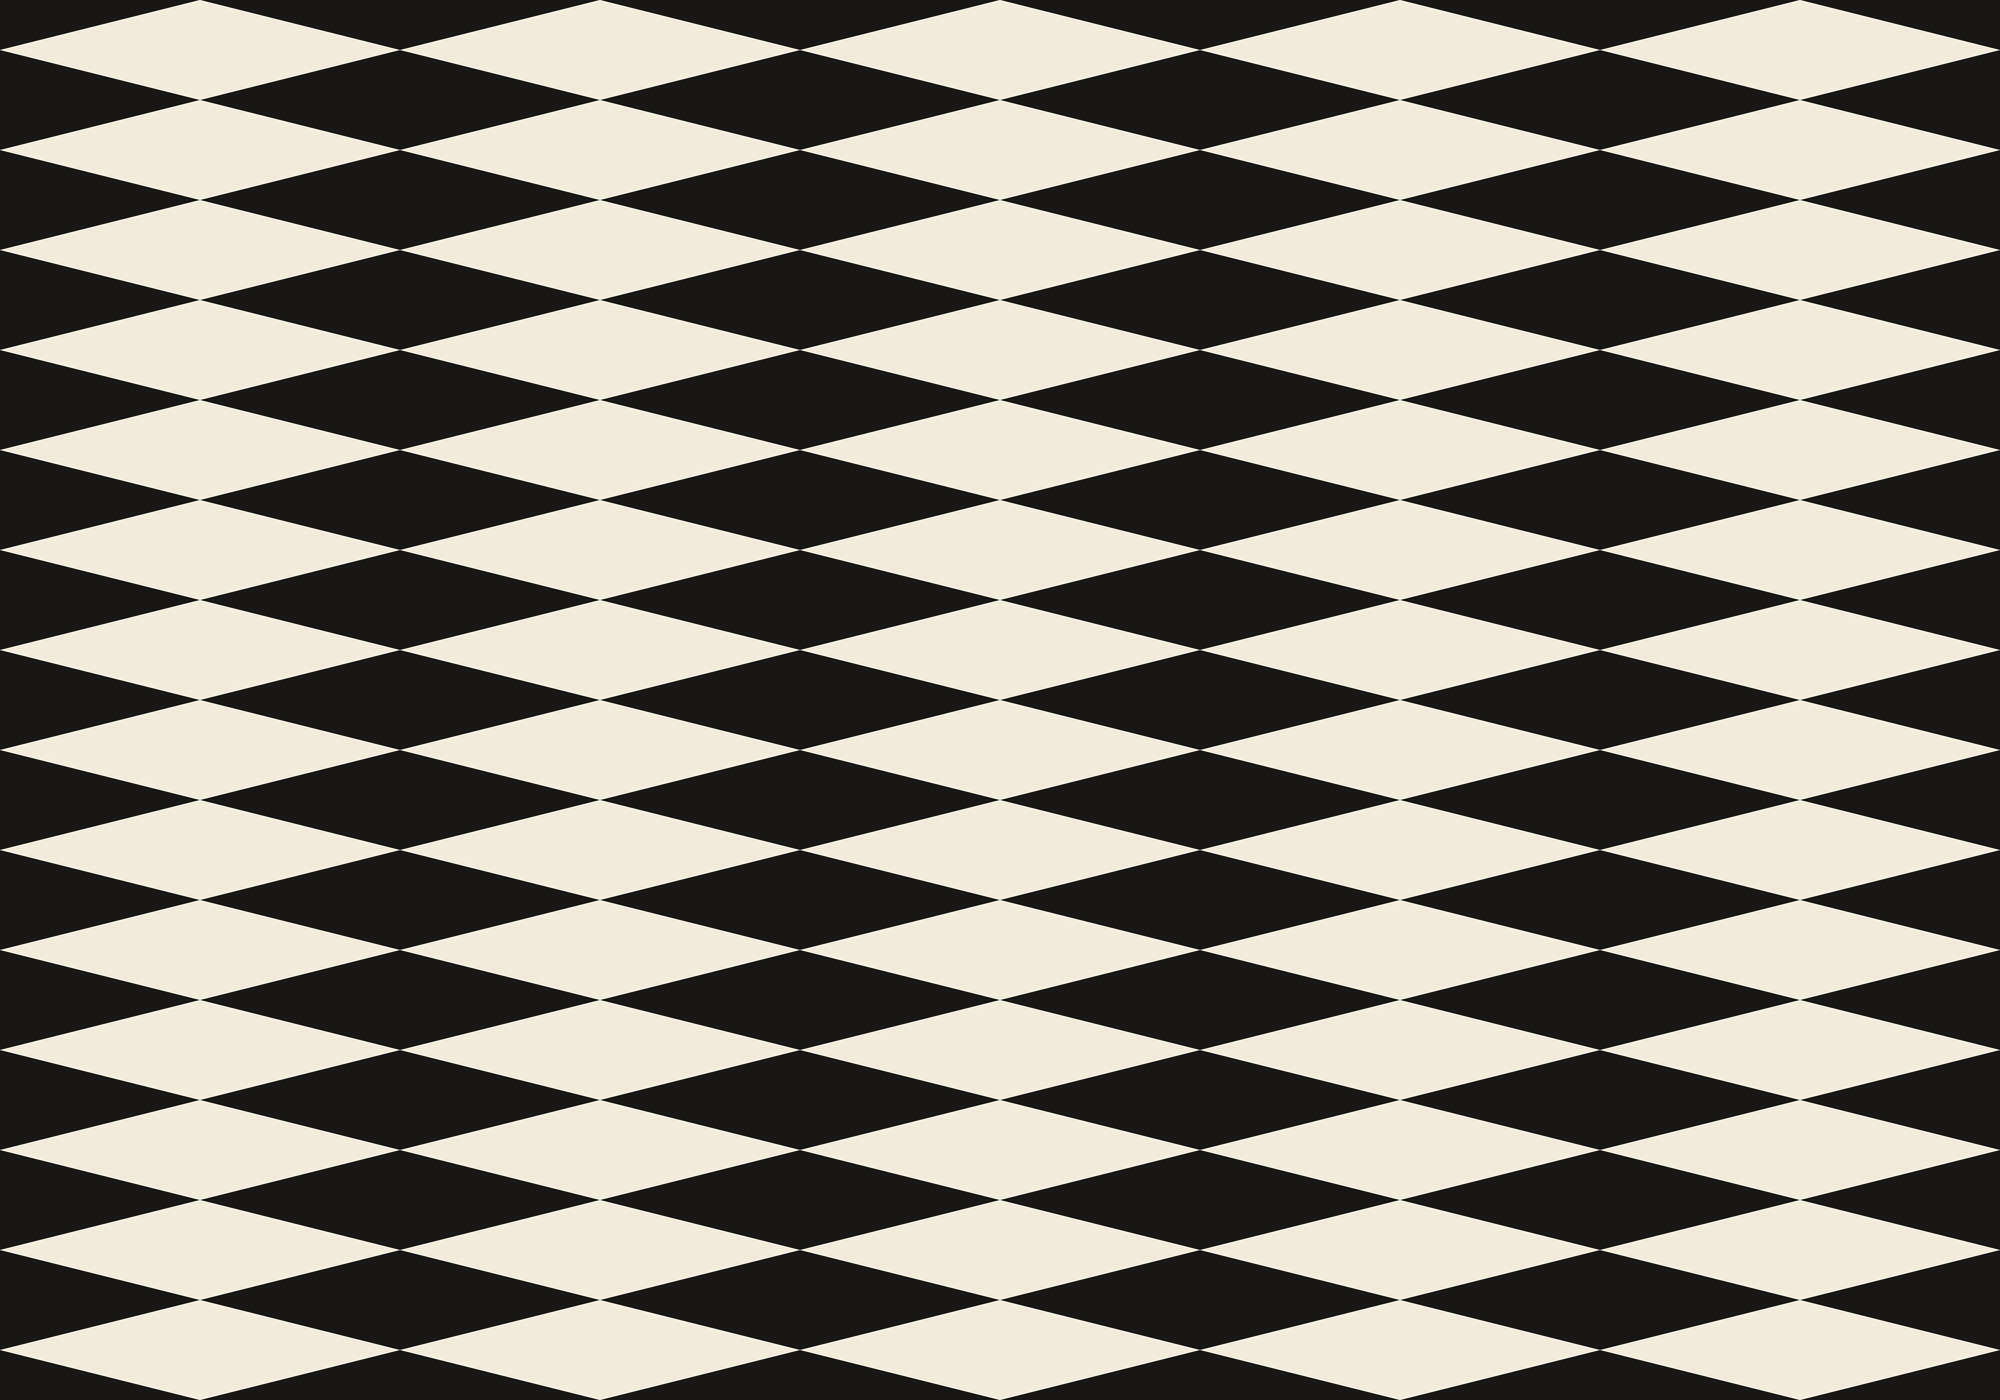             Graphic wallpaper with diamonds in 70s look - Black, Cream | Matt smooth fleece
        